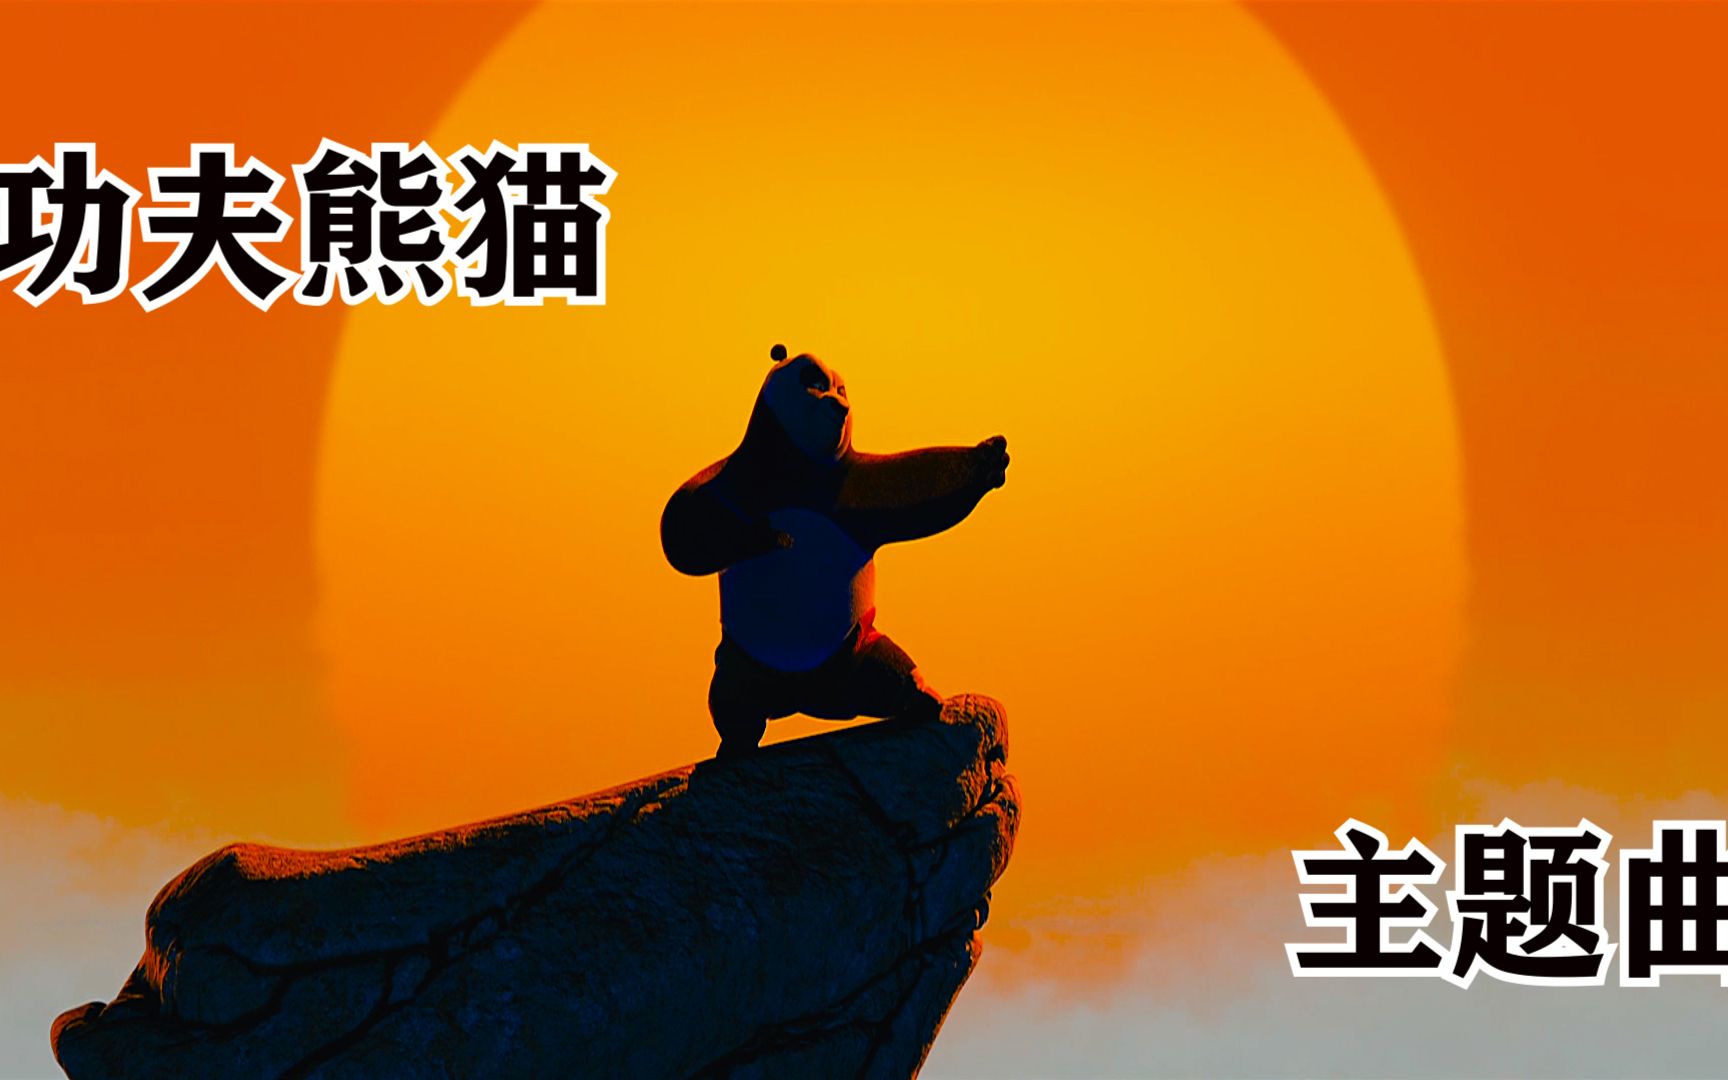 《功夫熊猫》主题曲《KungFuFighting》感受中国功夫在好莱坞魅力